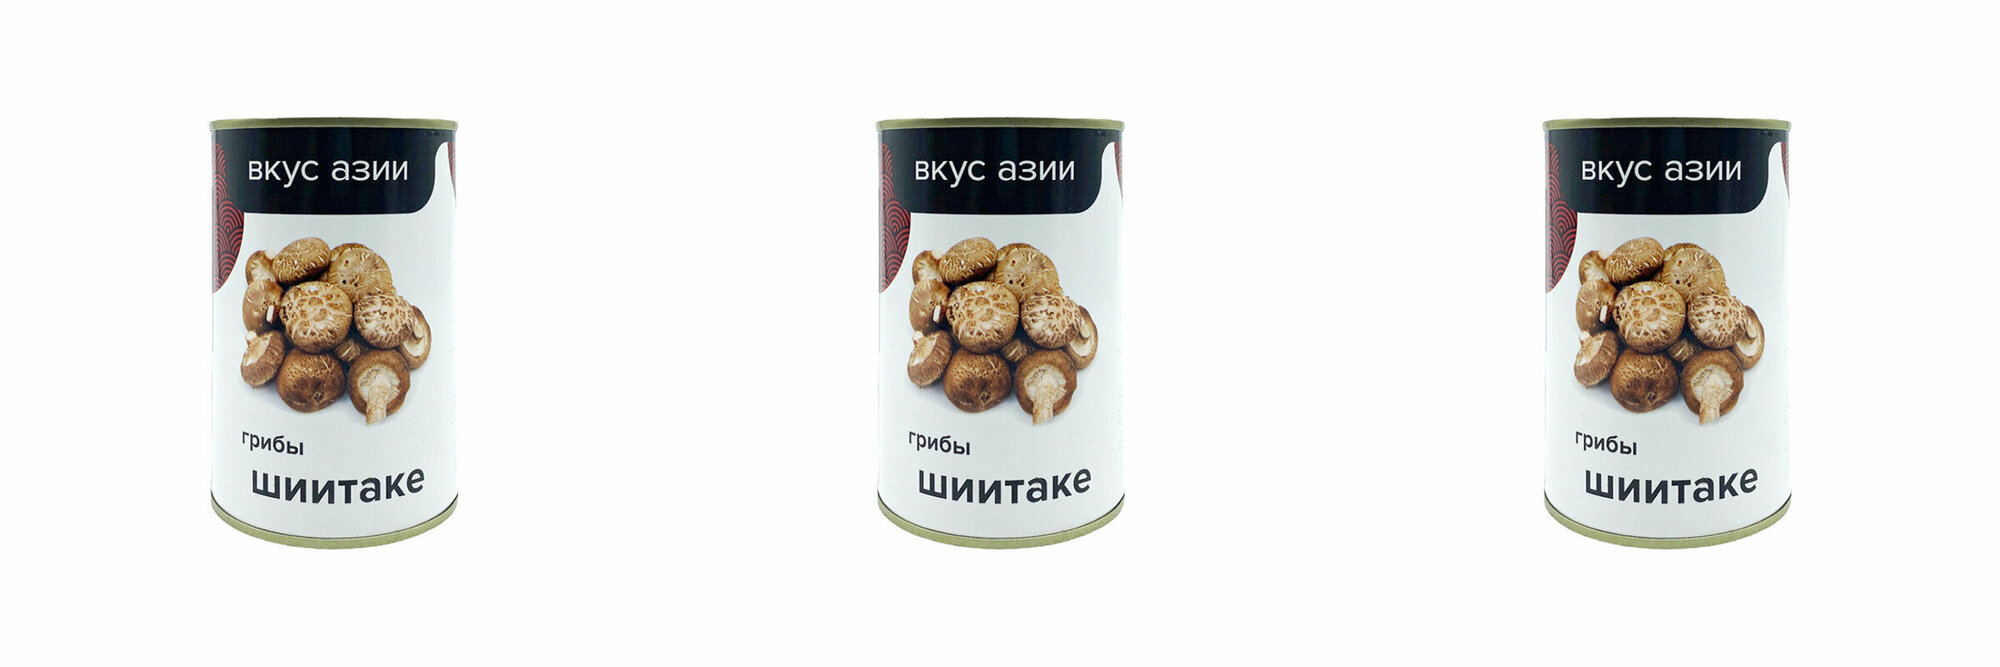 Вкус Азии Грибы консервированные Шиитаке, 400 г, 3 шт